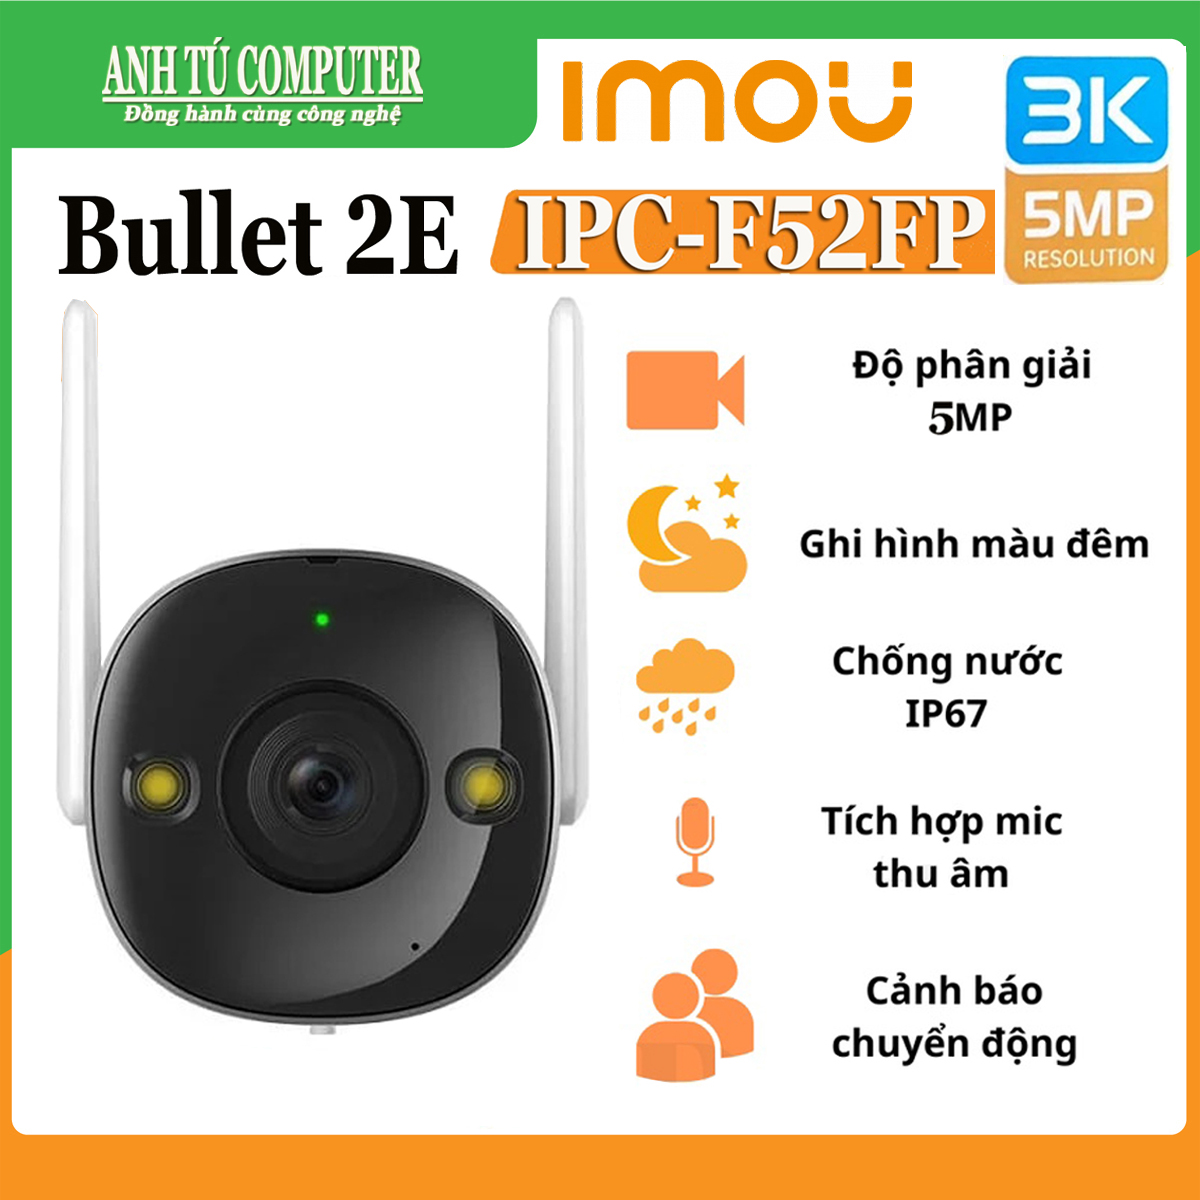 Camera IP Wifi 5MP 3K ngoài trời IMOU BULLET 2E F52FP hàng chính hãng